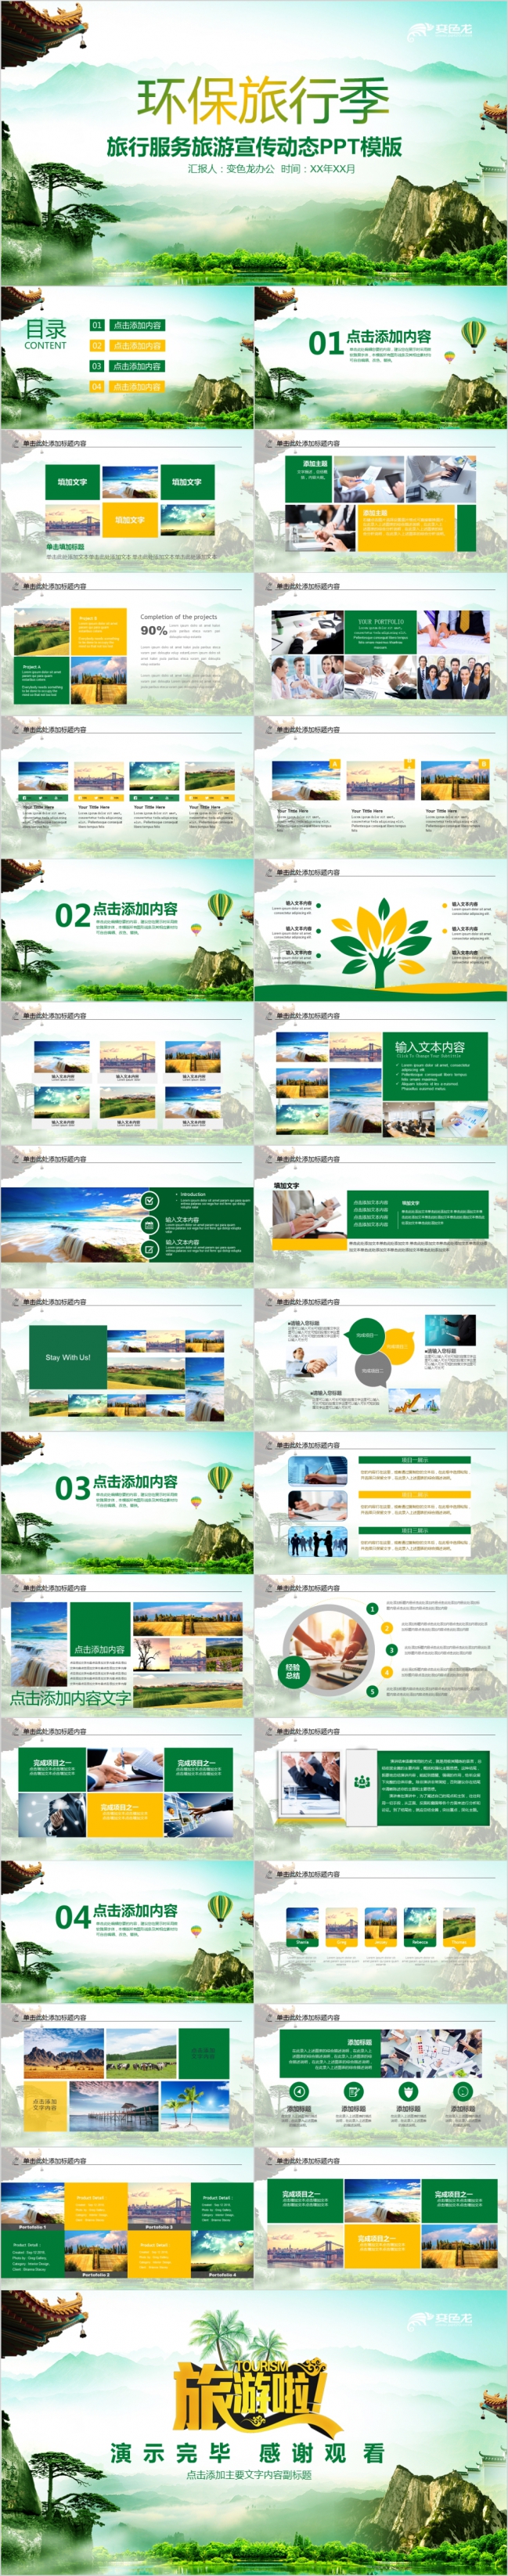 环保绿色旅行公司宣传介绍动态PPT模板